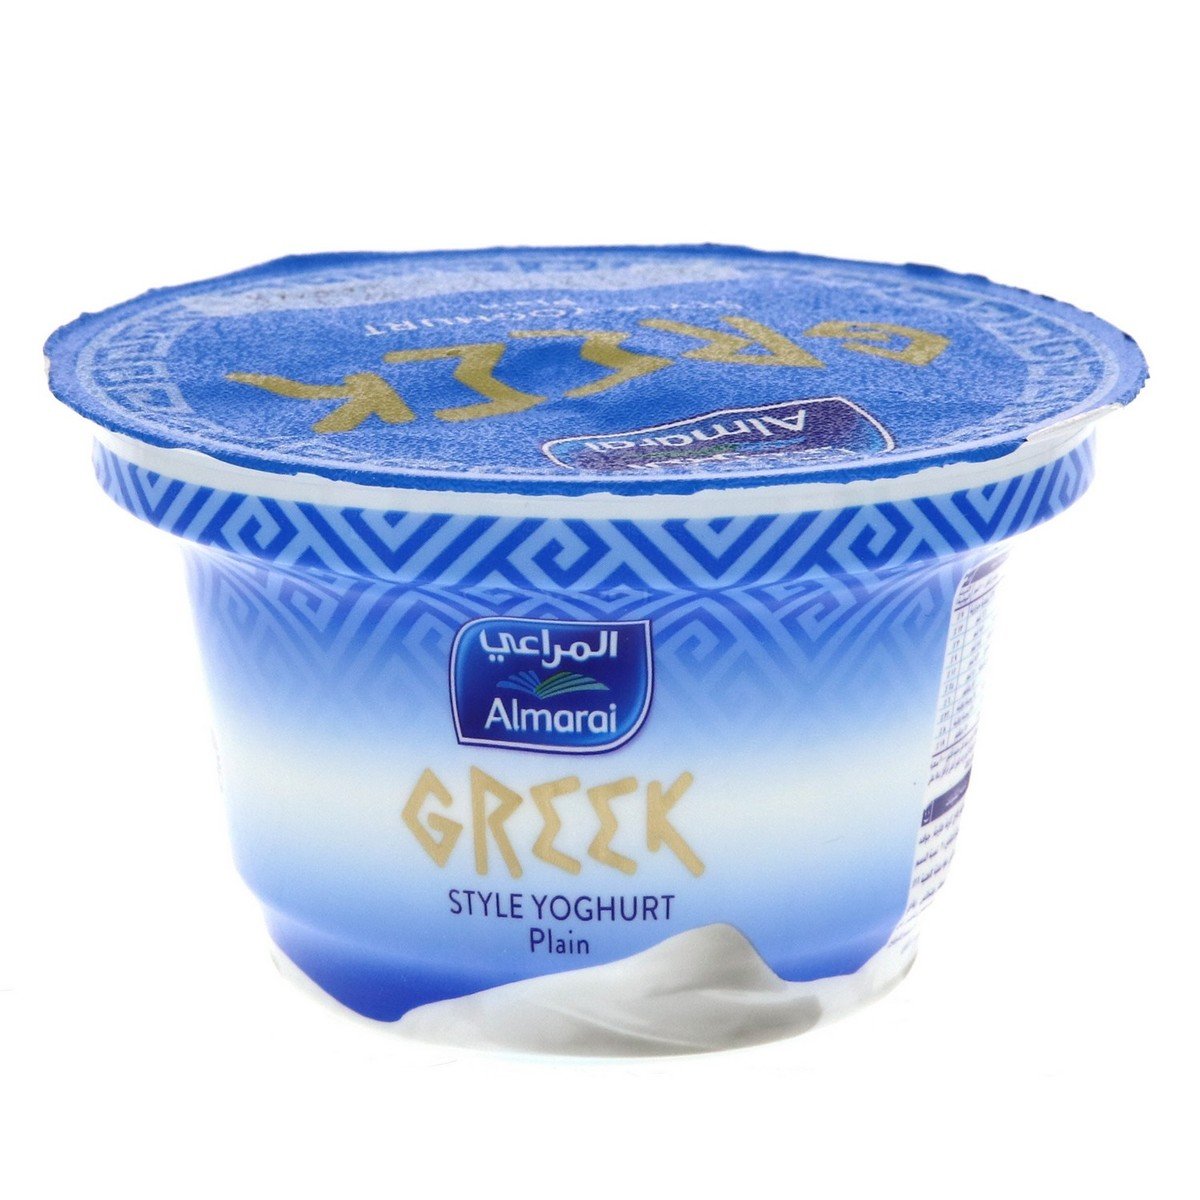 اشتري قم بشراء المراعي زبادي يوناني سادة 150جم Online at Best Price من الموقع - من لولو هايبر ماركت Plain Yoghurt في الامارات